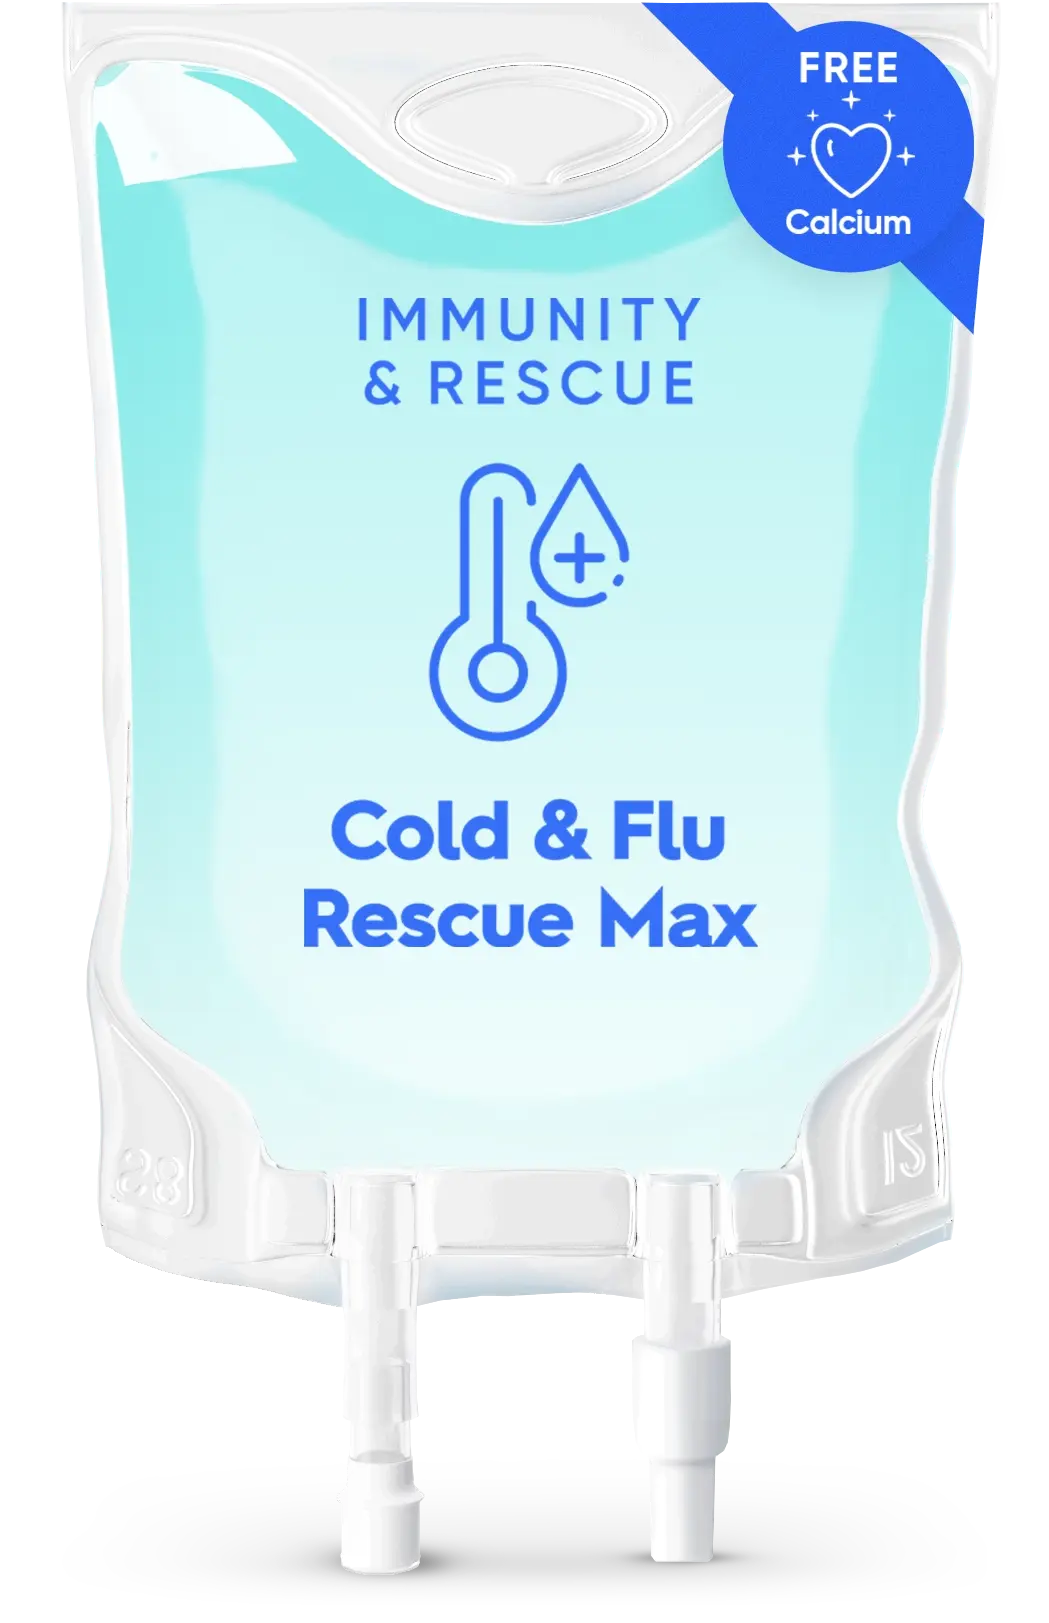 Cold & Flu Rescue Max